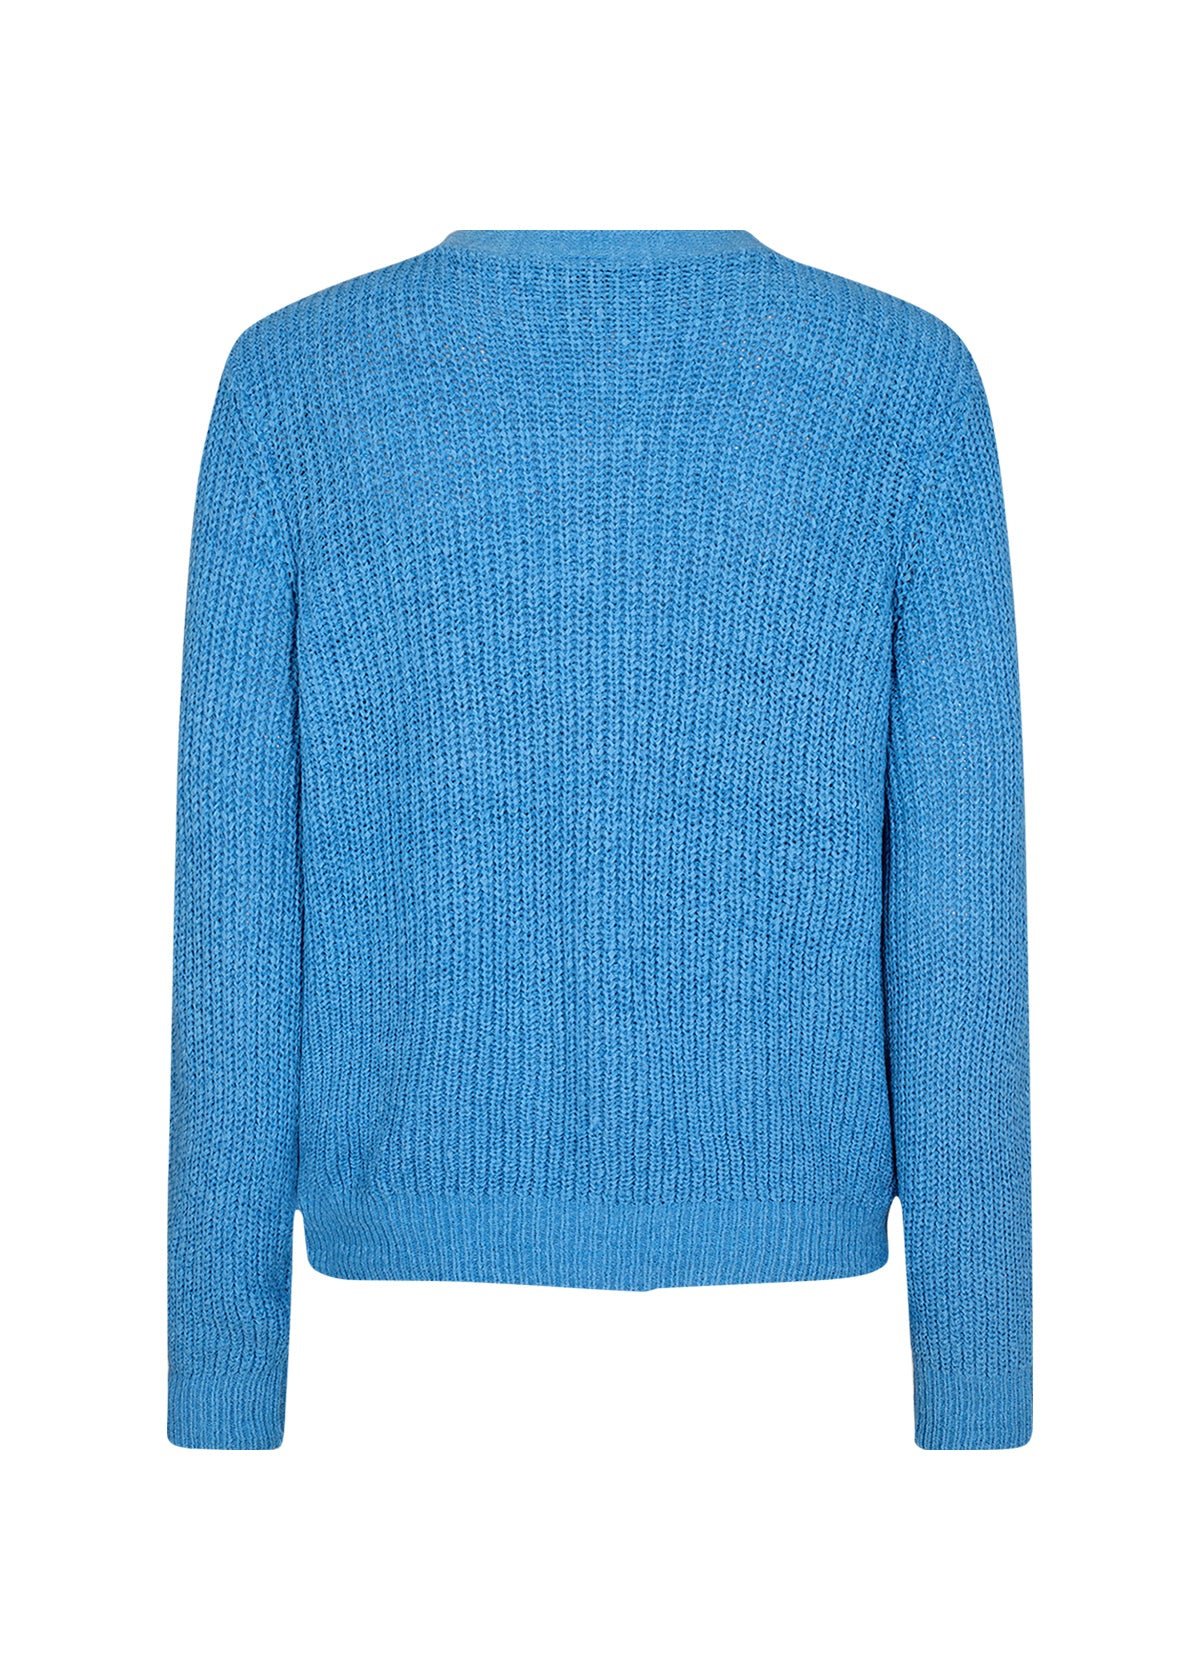 SOYA CONCEPT GLENDA 4 Sky Blue Knit Cardigan